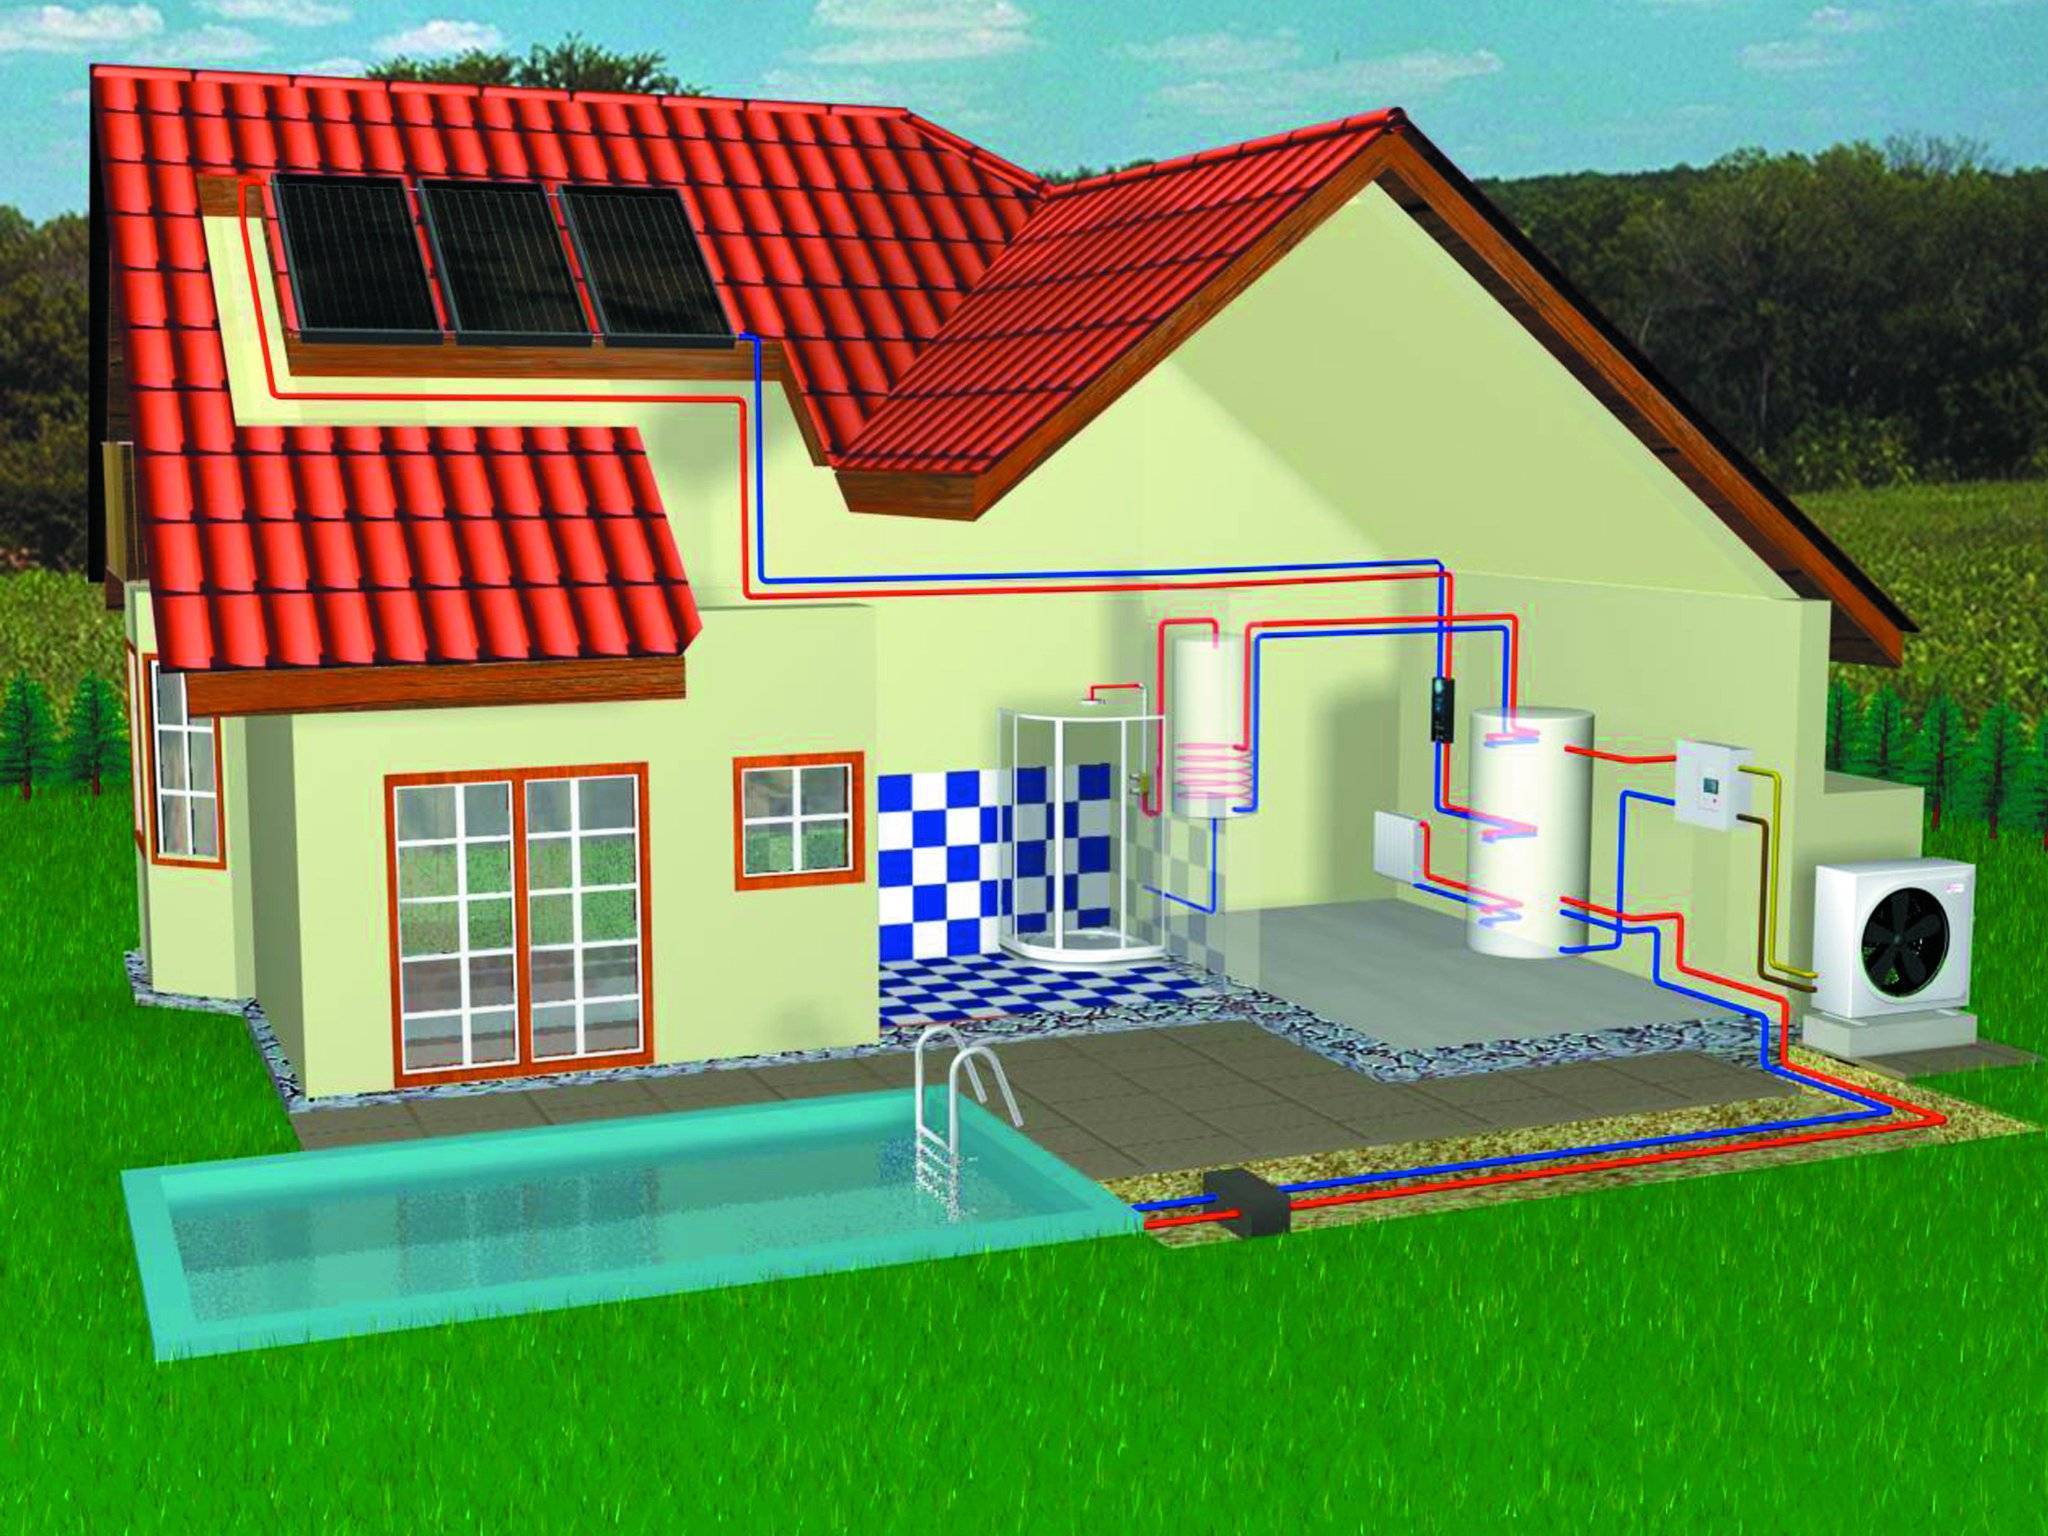 Автономное отопление: индивидуальное в многоквартирном доме и квартире, установка системы